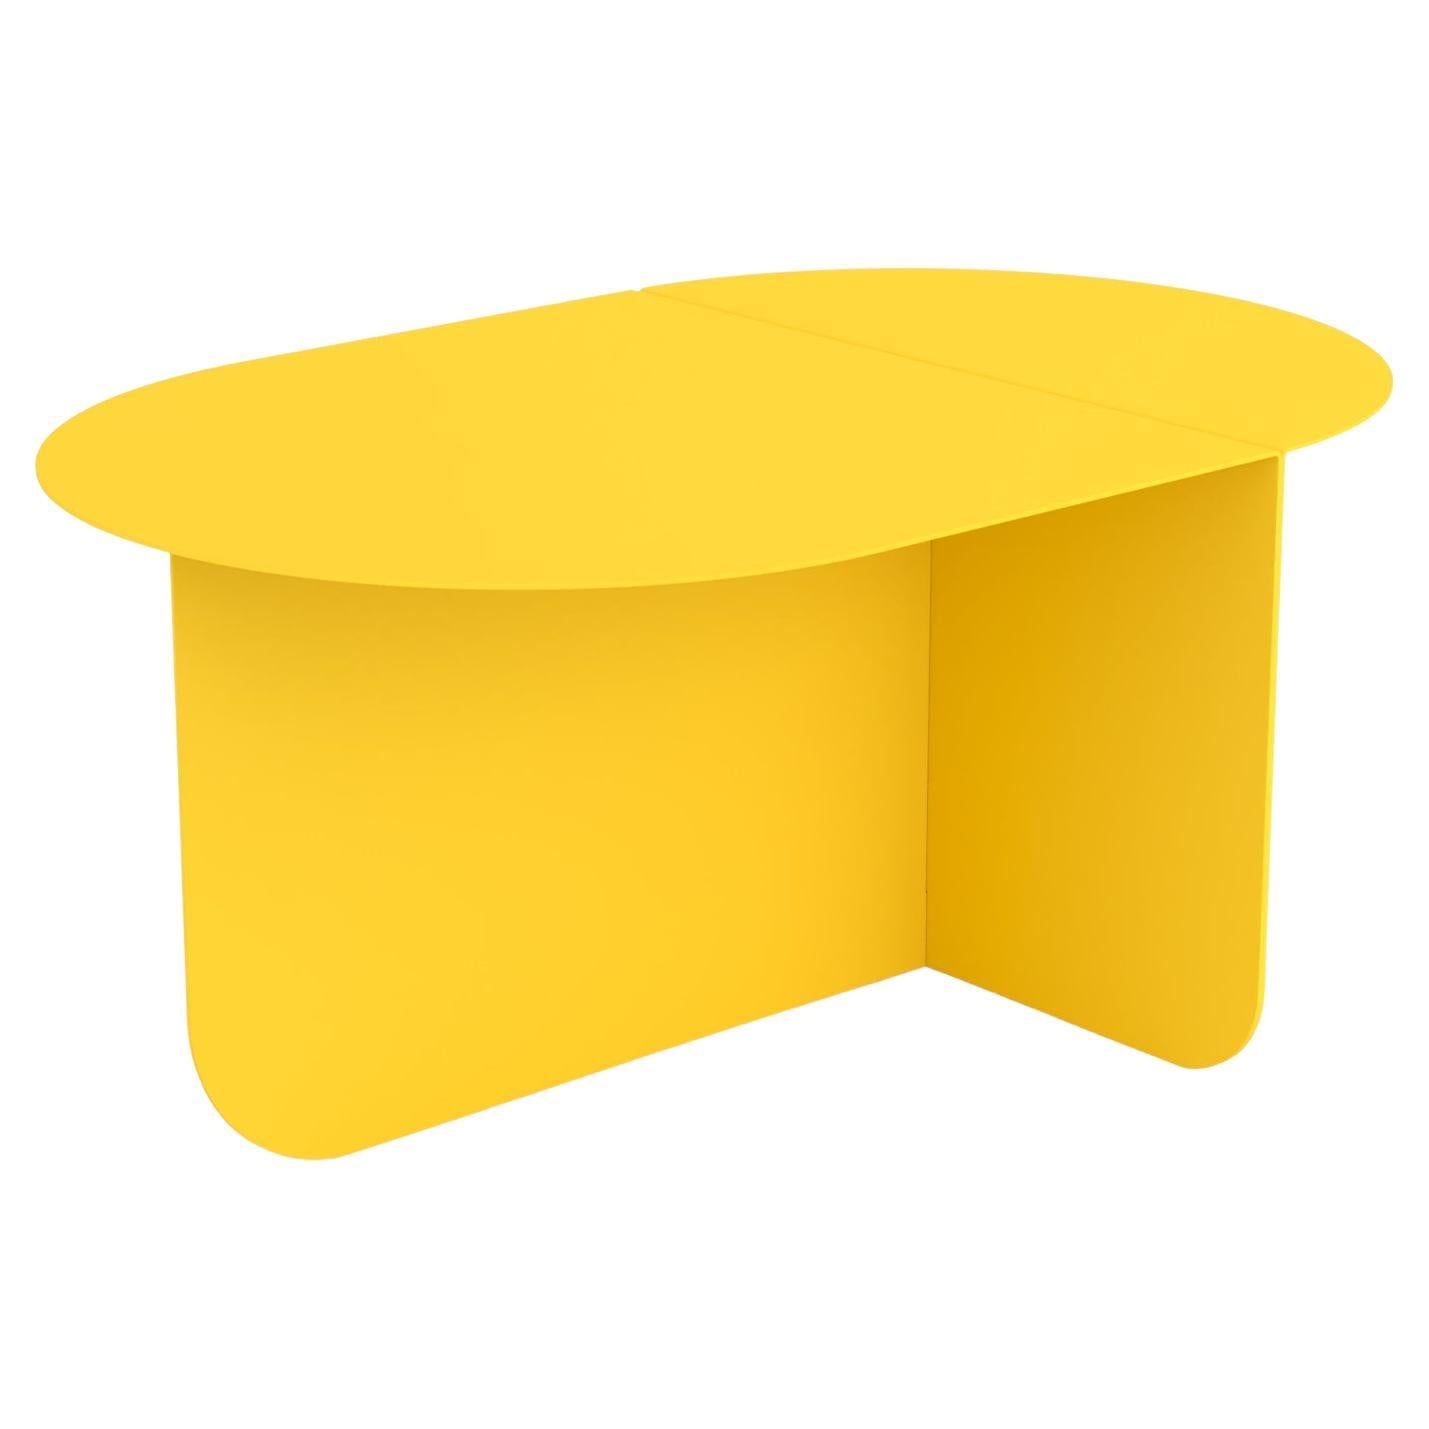 Couleur, table basse ovale moderne, Ral 1018 - Zinc Yellow, par Bas Vellekoop